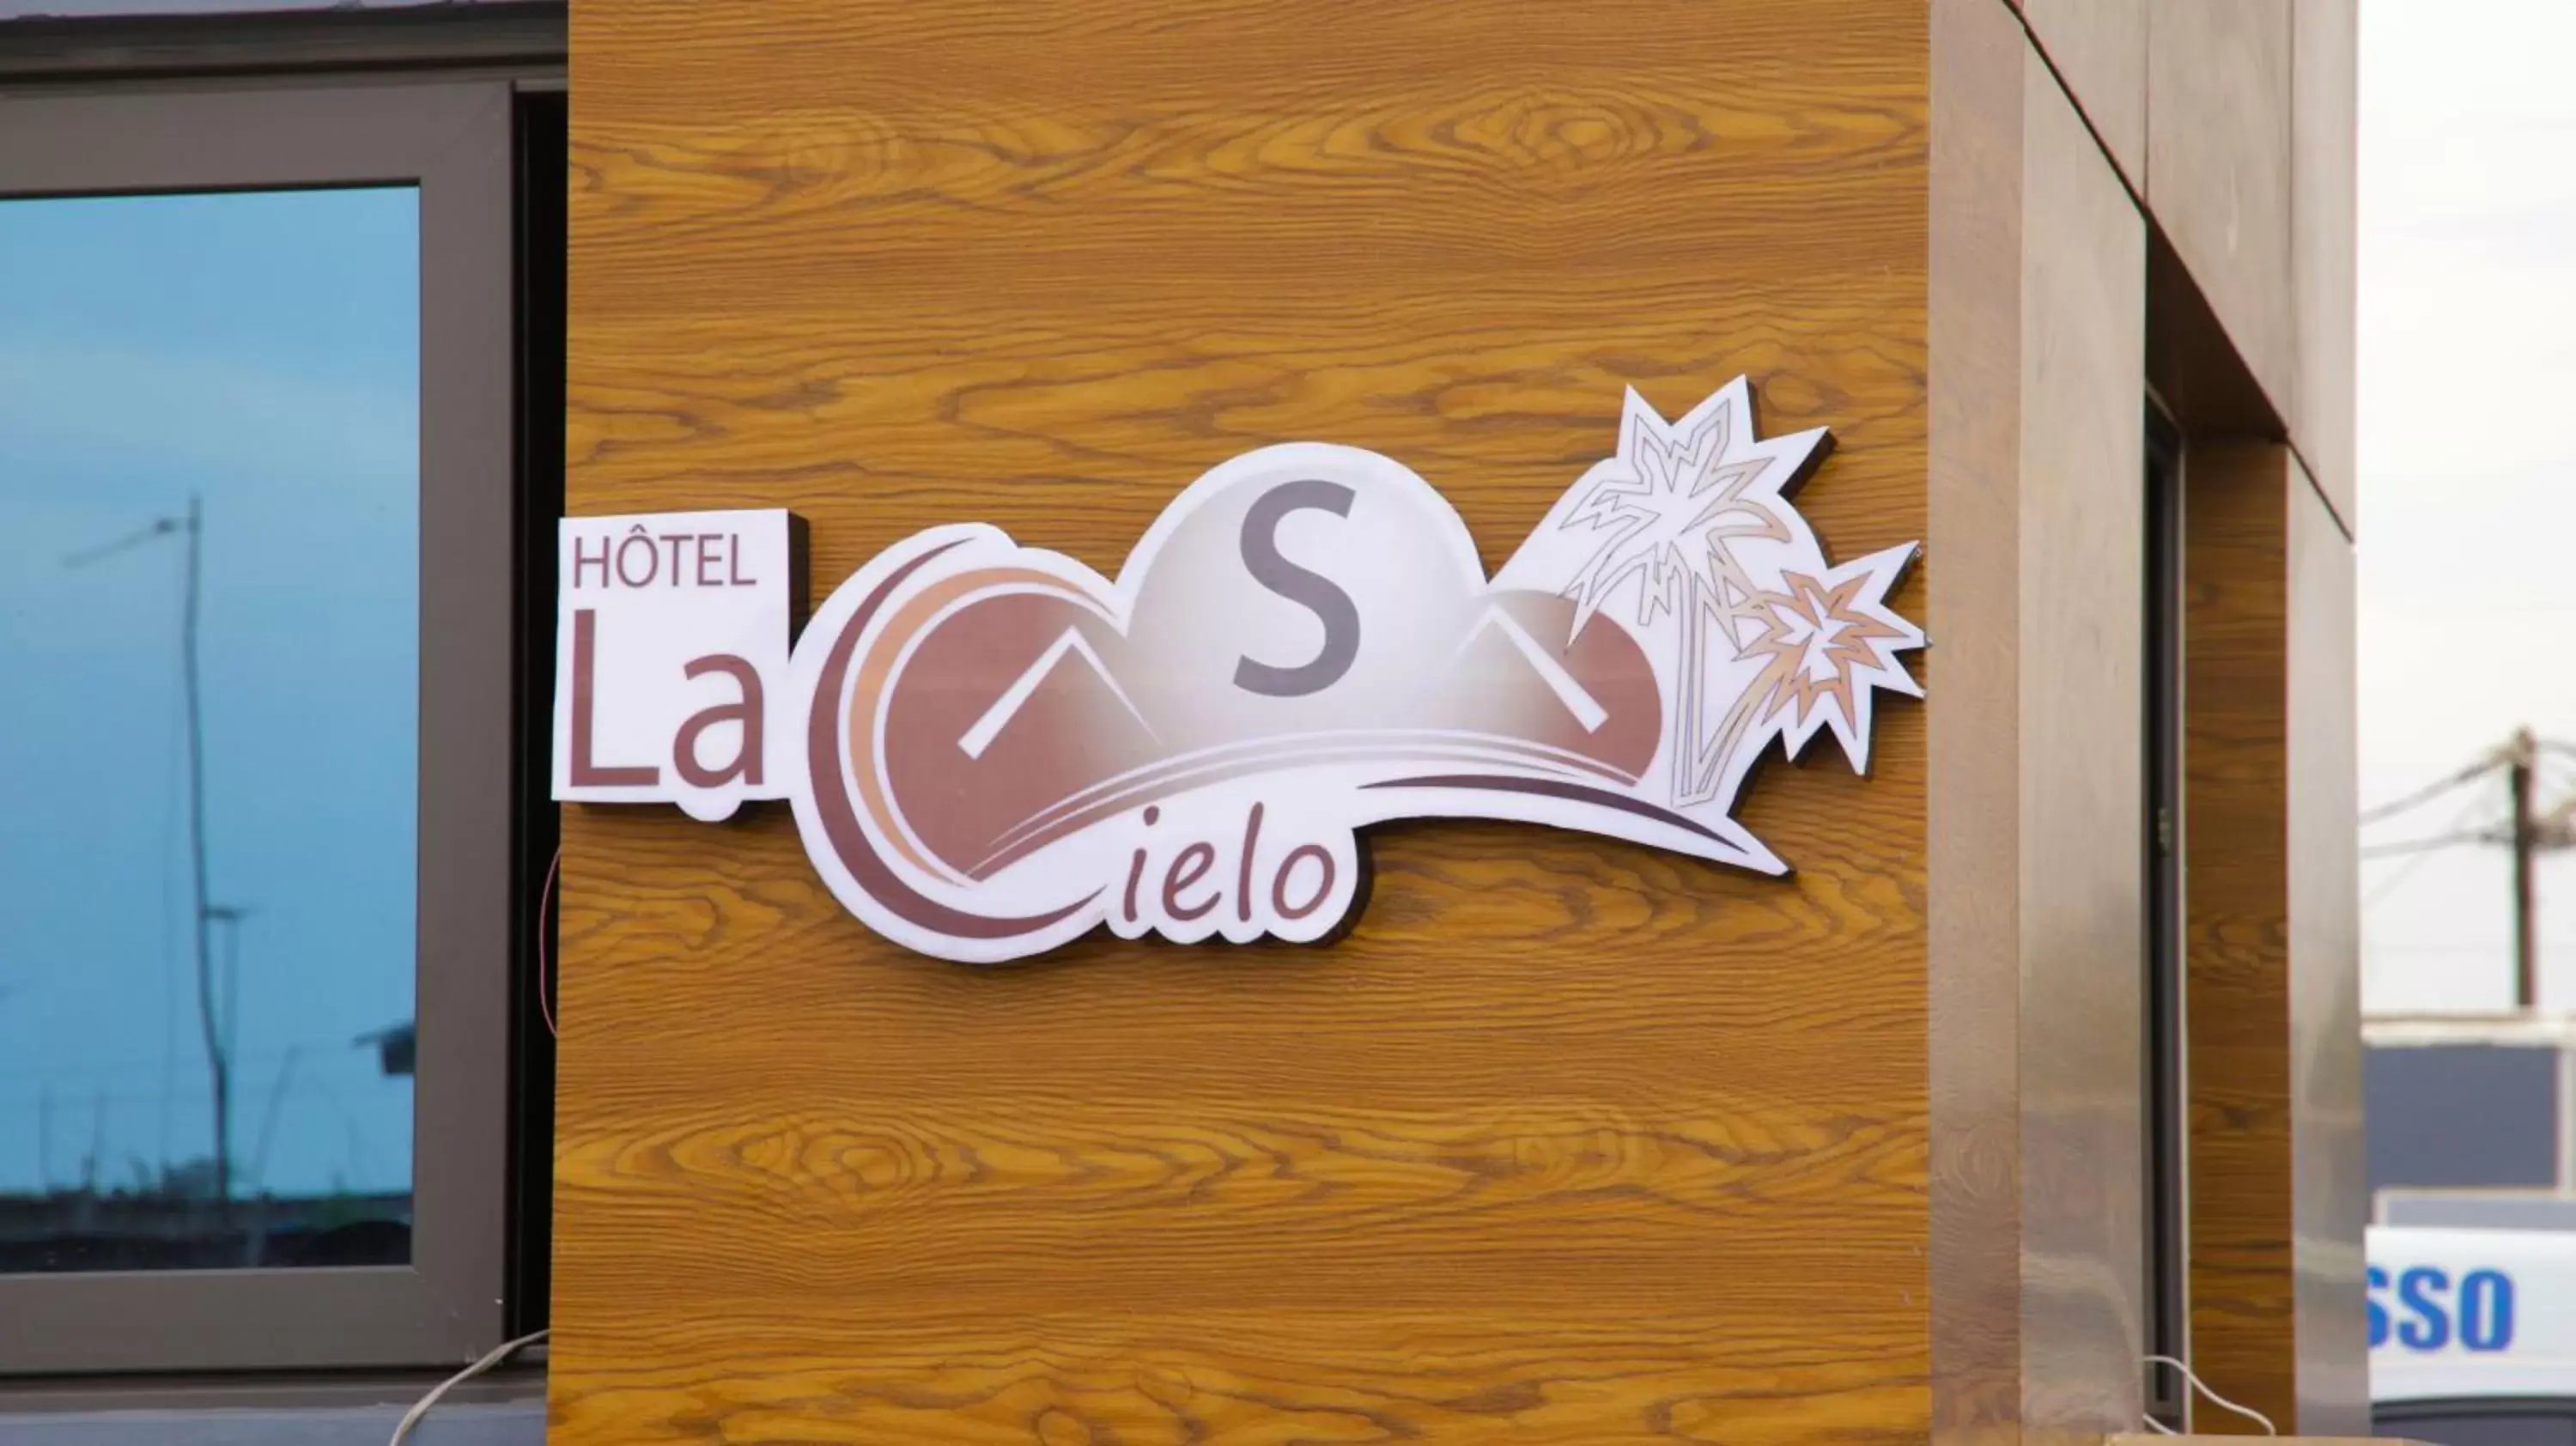 Property logo or sign in Hotel La Casa Cielo